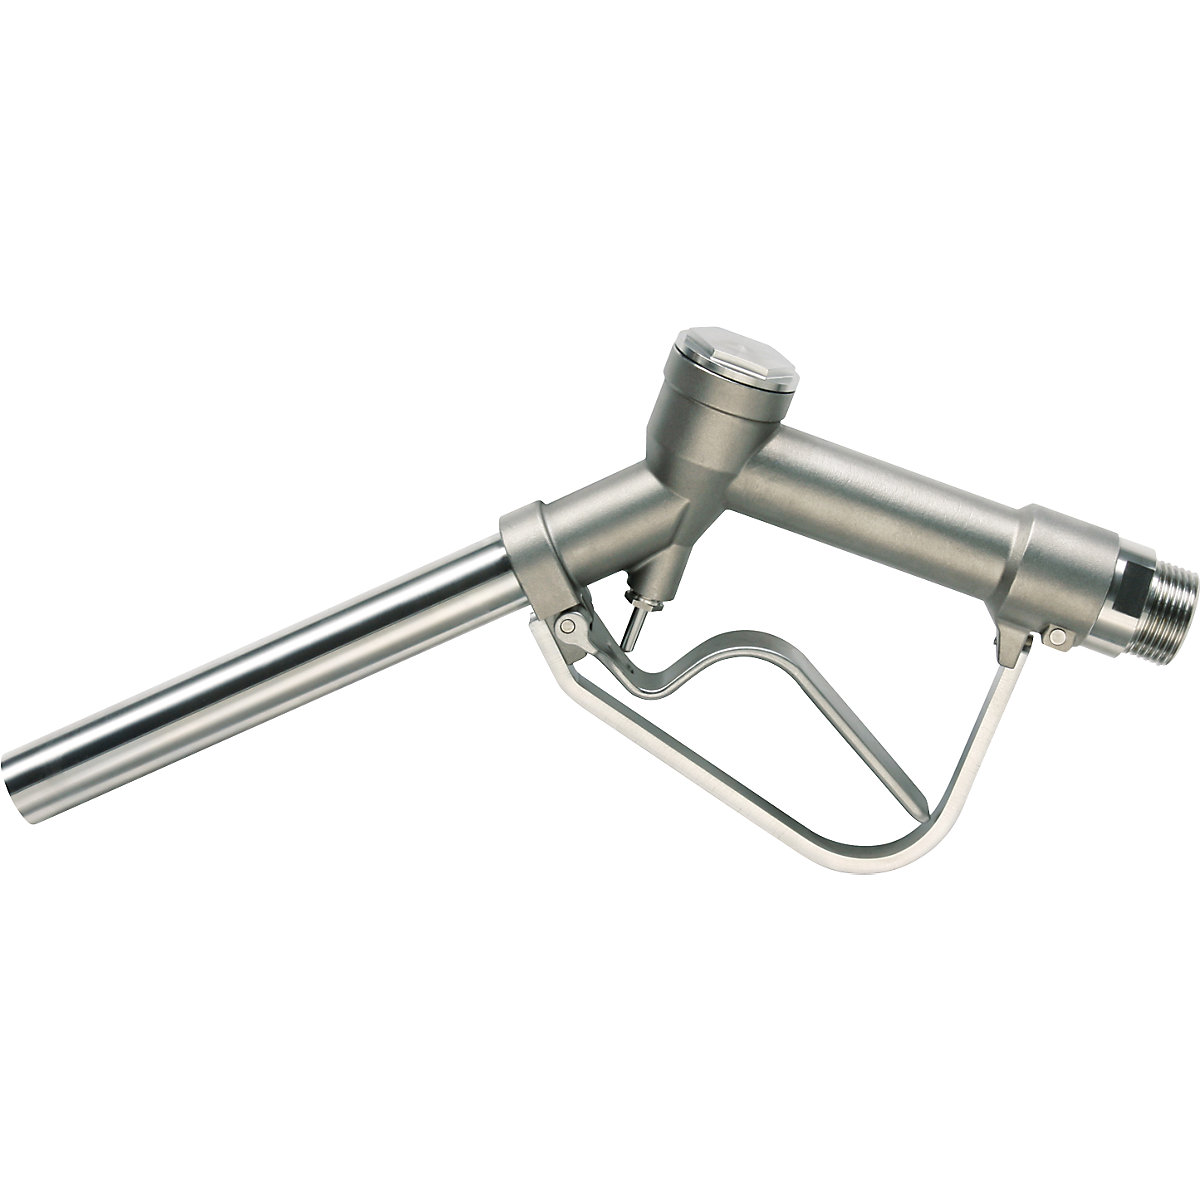 Pistola dispensadora manual de acero inoxidable 1.4571 - Jessberger